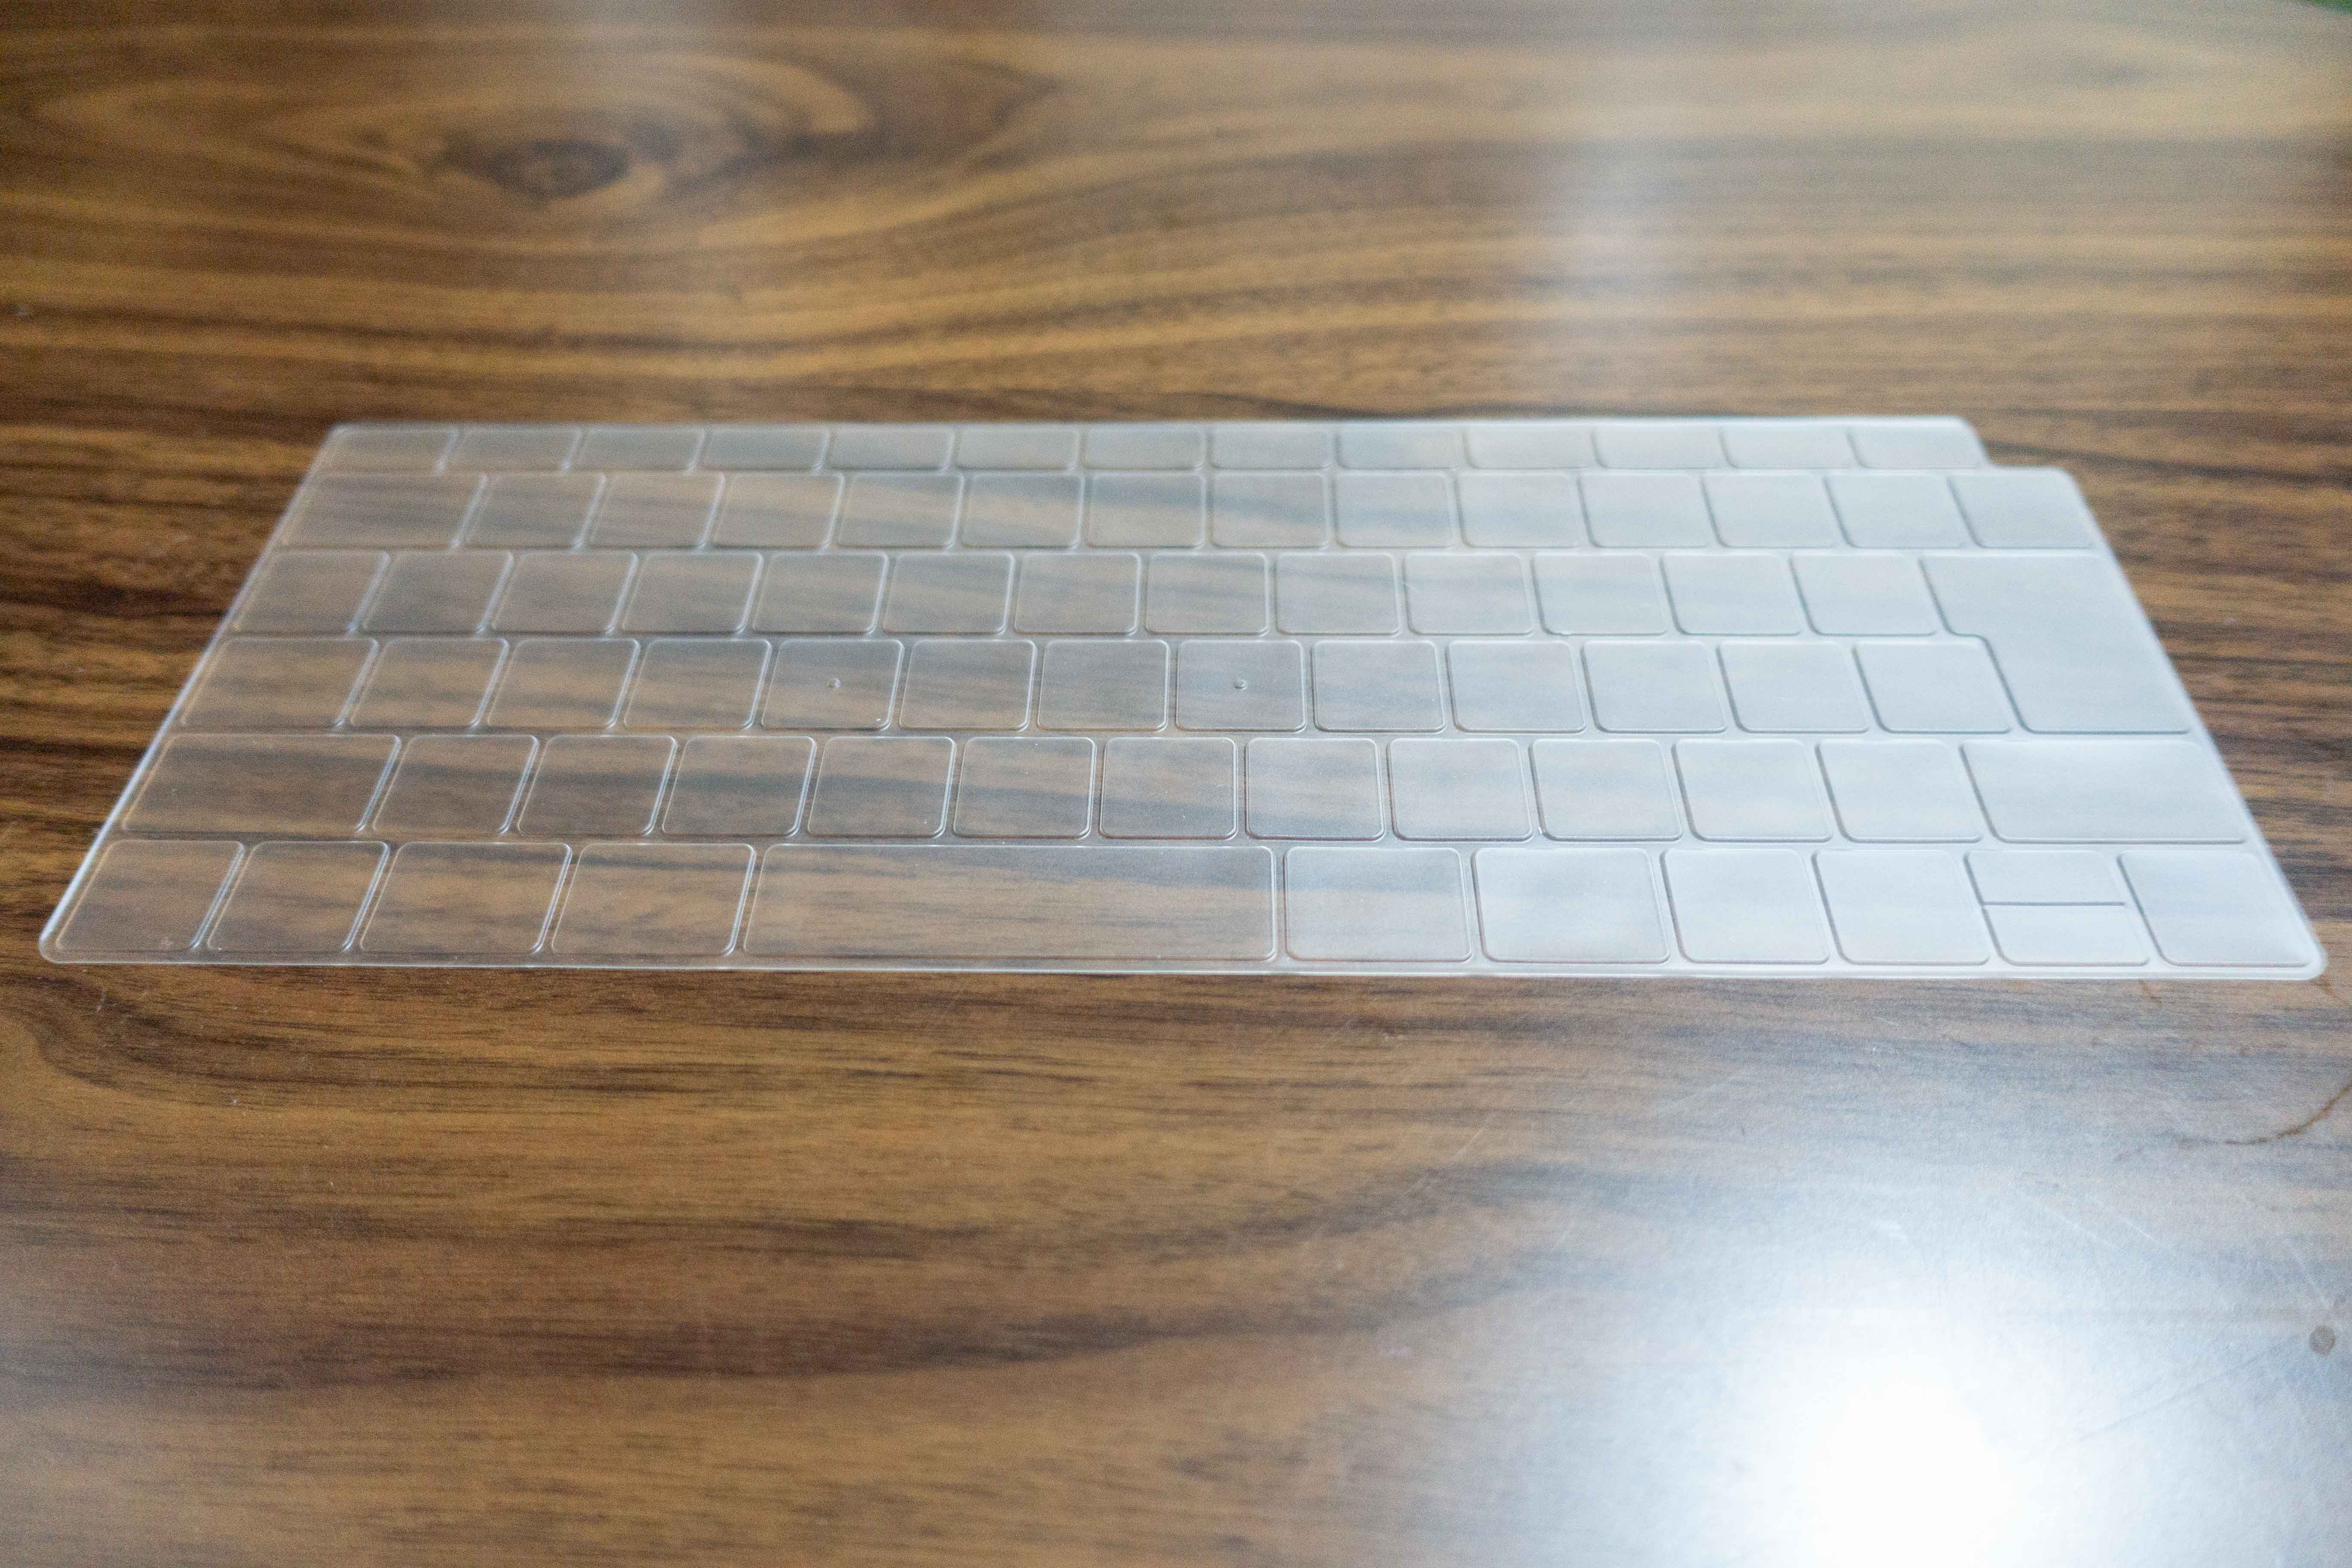 MacBook Air2018キーボードカバー